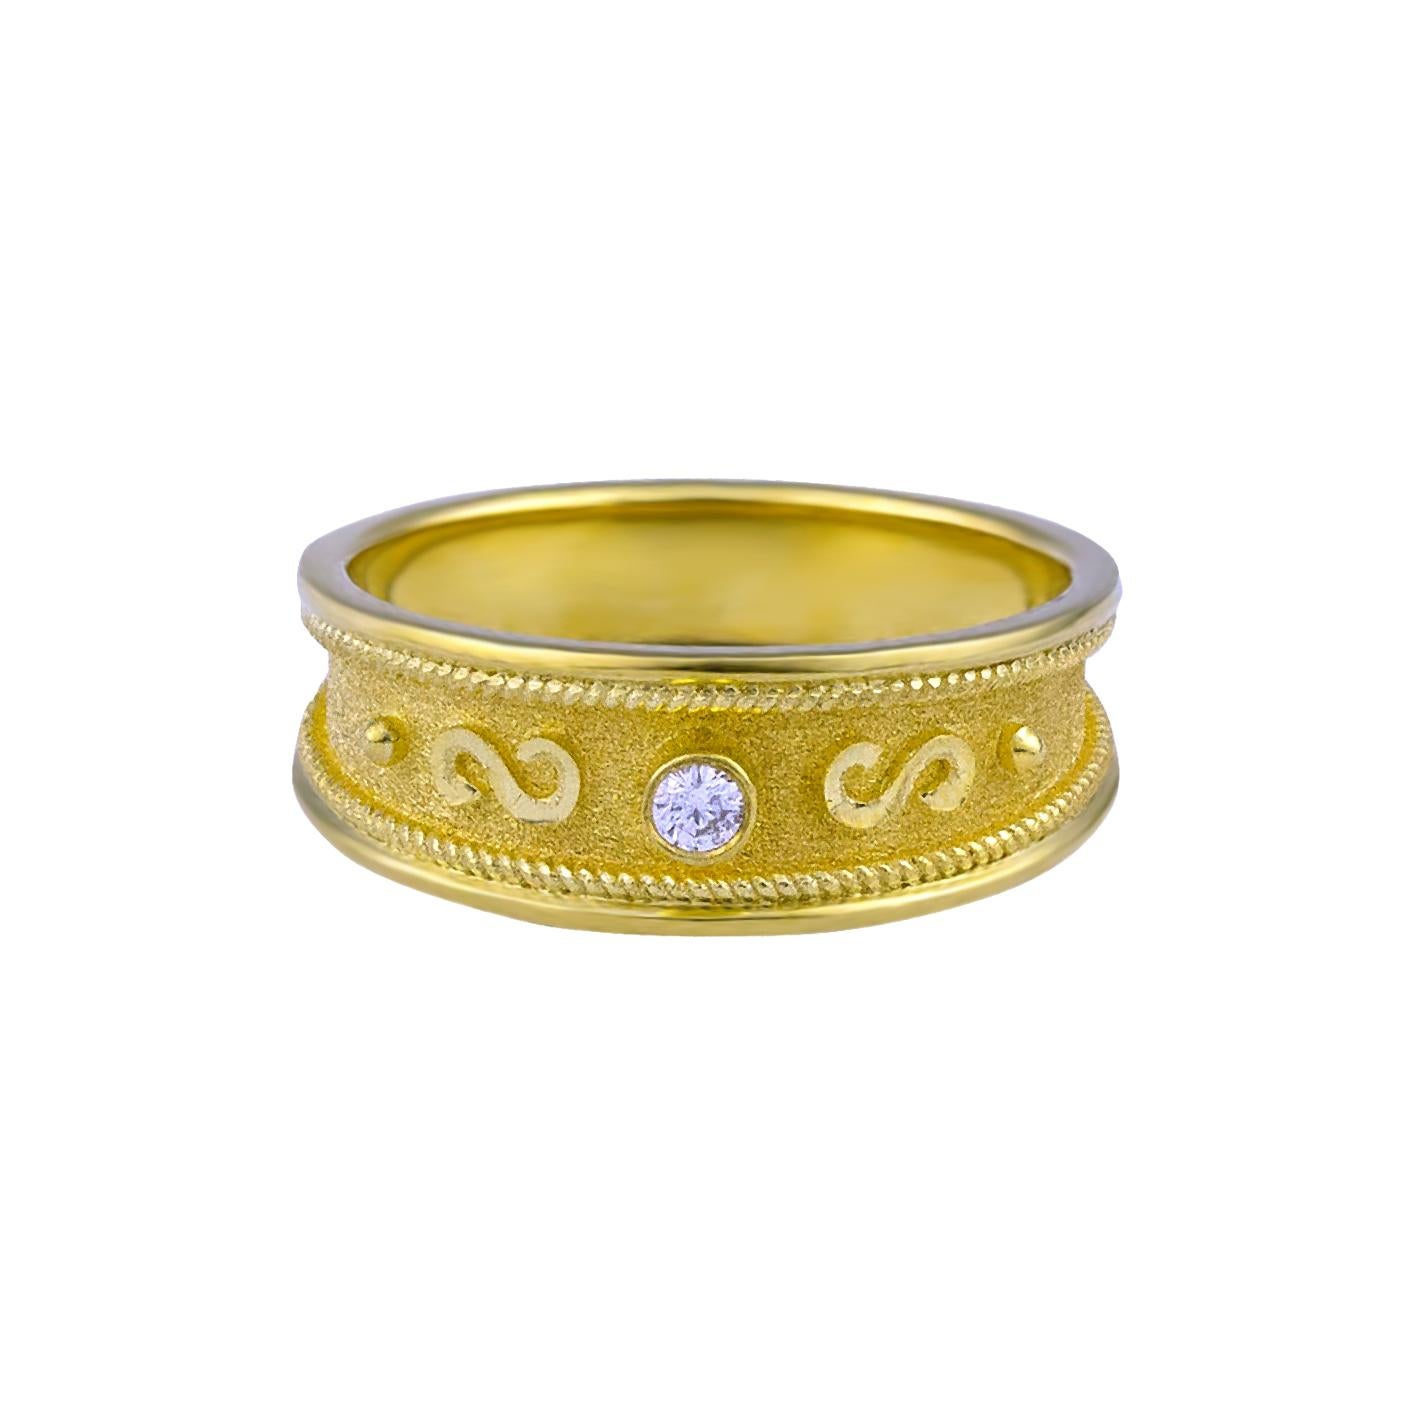 S.Georgios Designer Band Ring ist handgefertigt aus massivem 18 Karat Gelbgold alle maßgeschneiderte. Dieser atemberaubende Ring ist mikroskopisch genau mit Golddrähten verziert - granulierte Details kontrastieren mit byzantinischem Samt auf dem